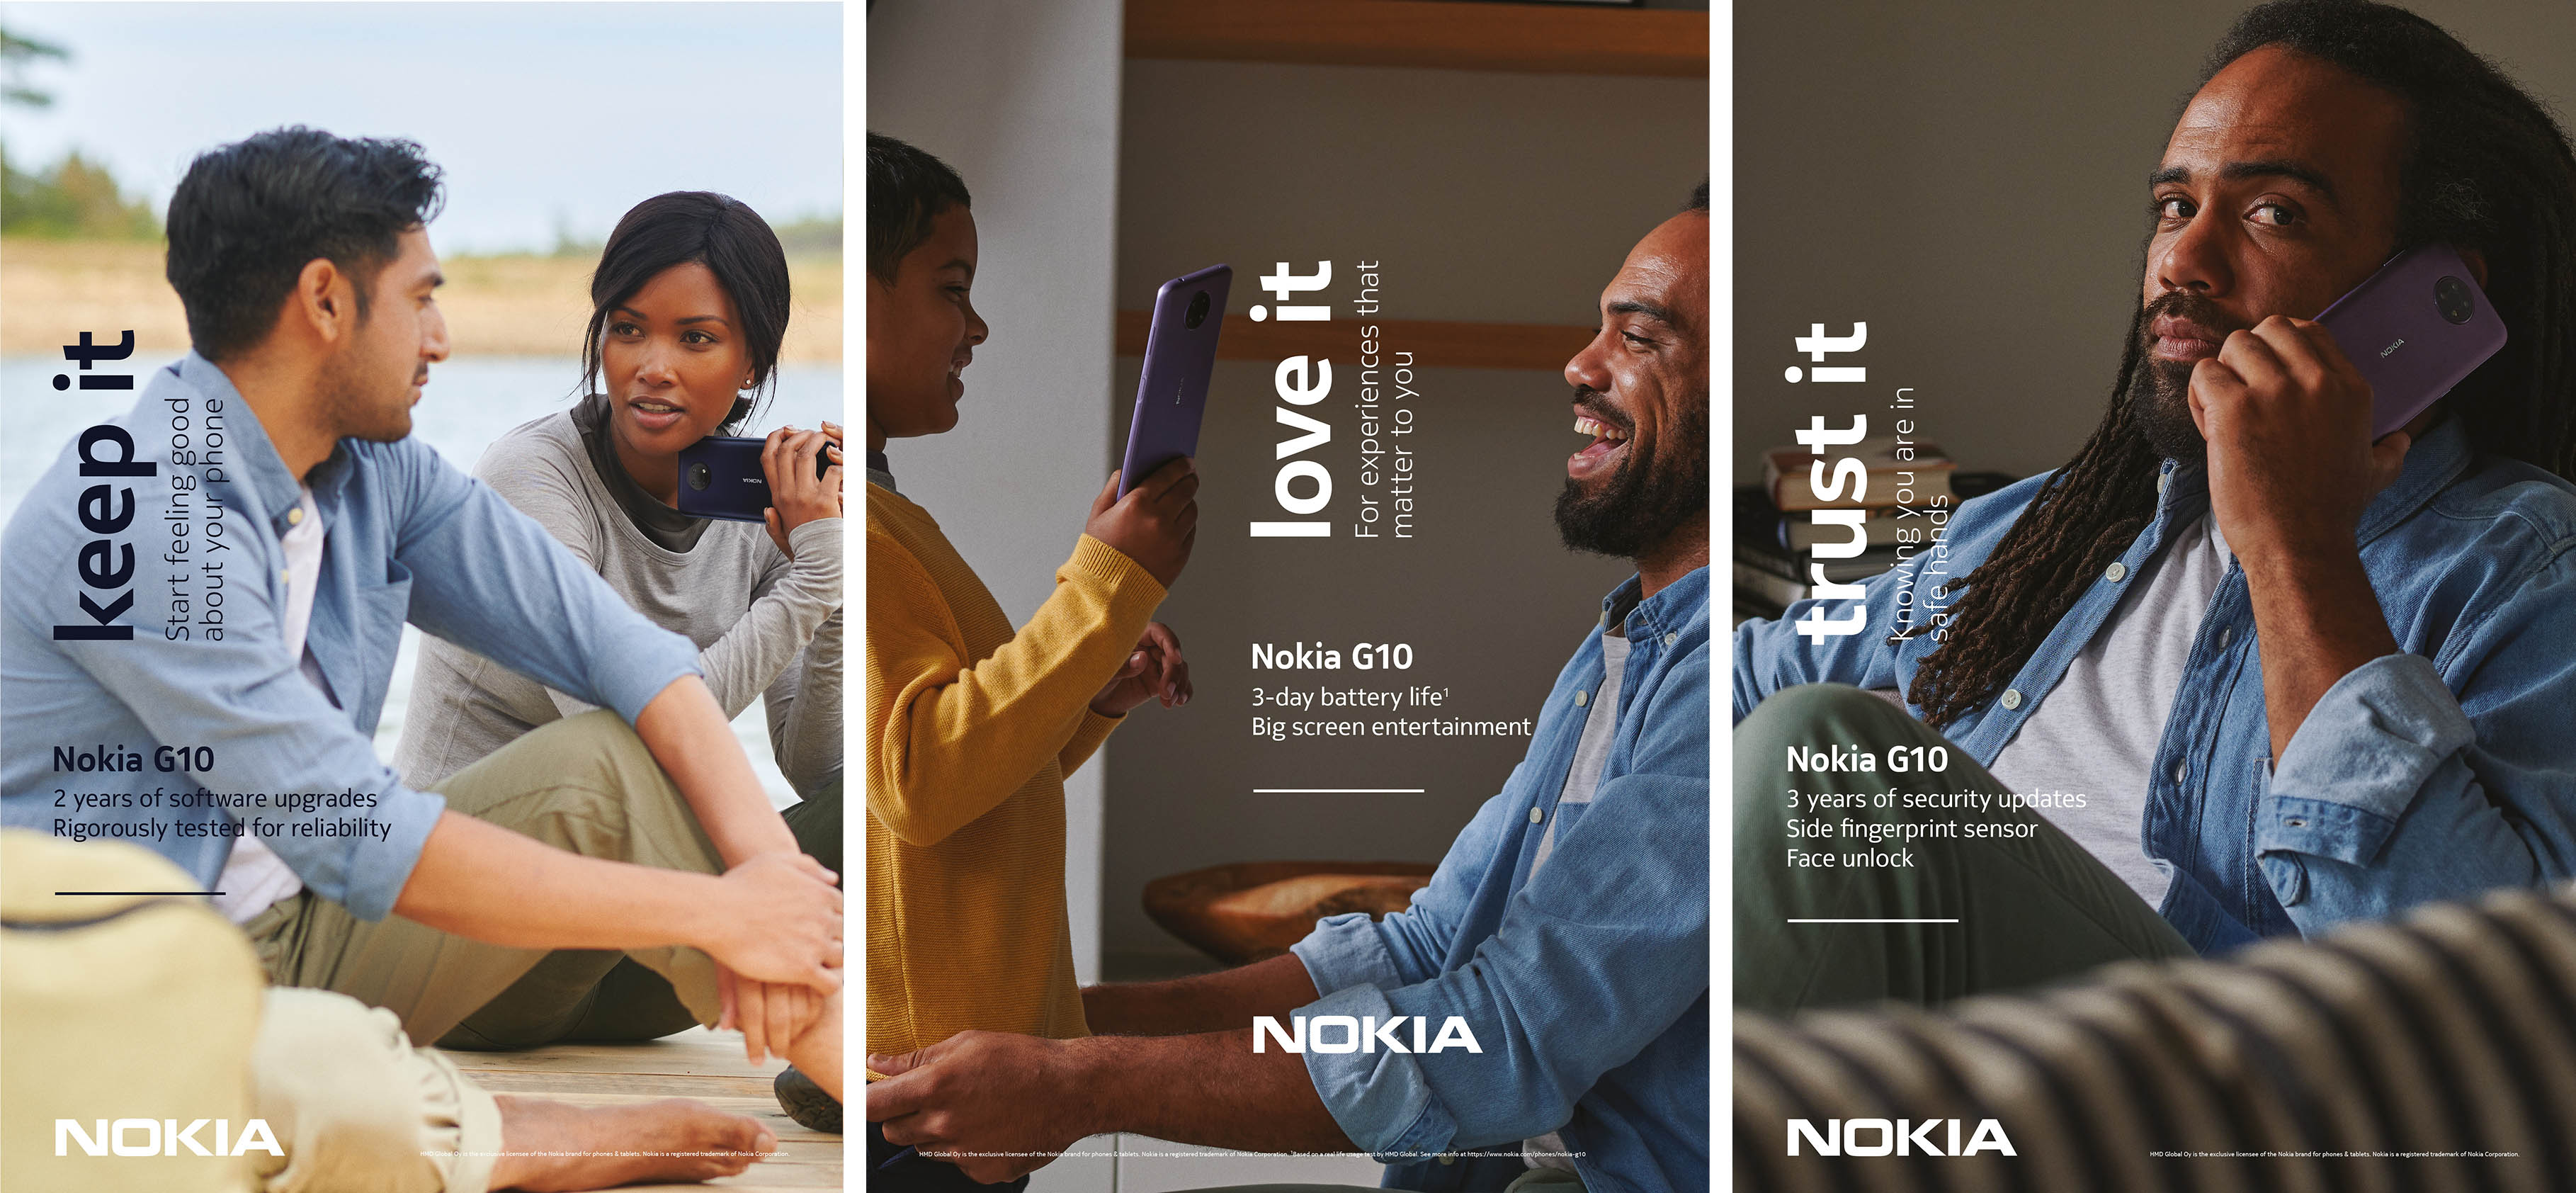 , Nokia X20 5G, Nokia X10 5G, Nokia G20 και Nokia G10: 4 νέα smartphones αναμένονται στην Ελλάδα